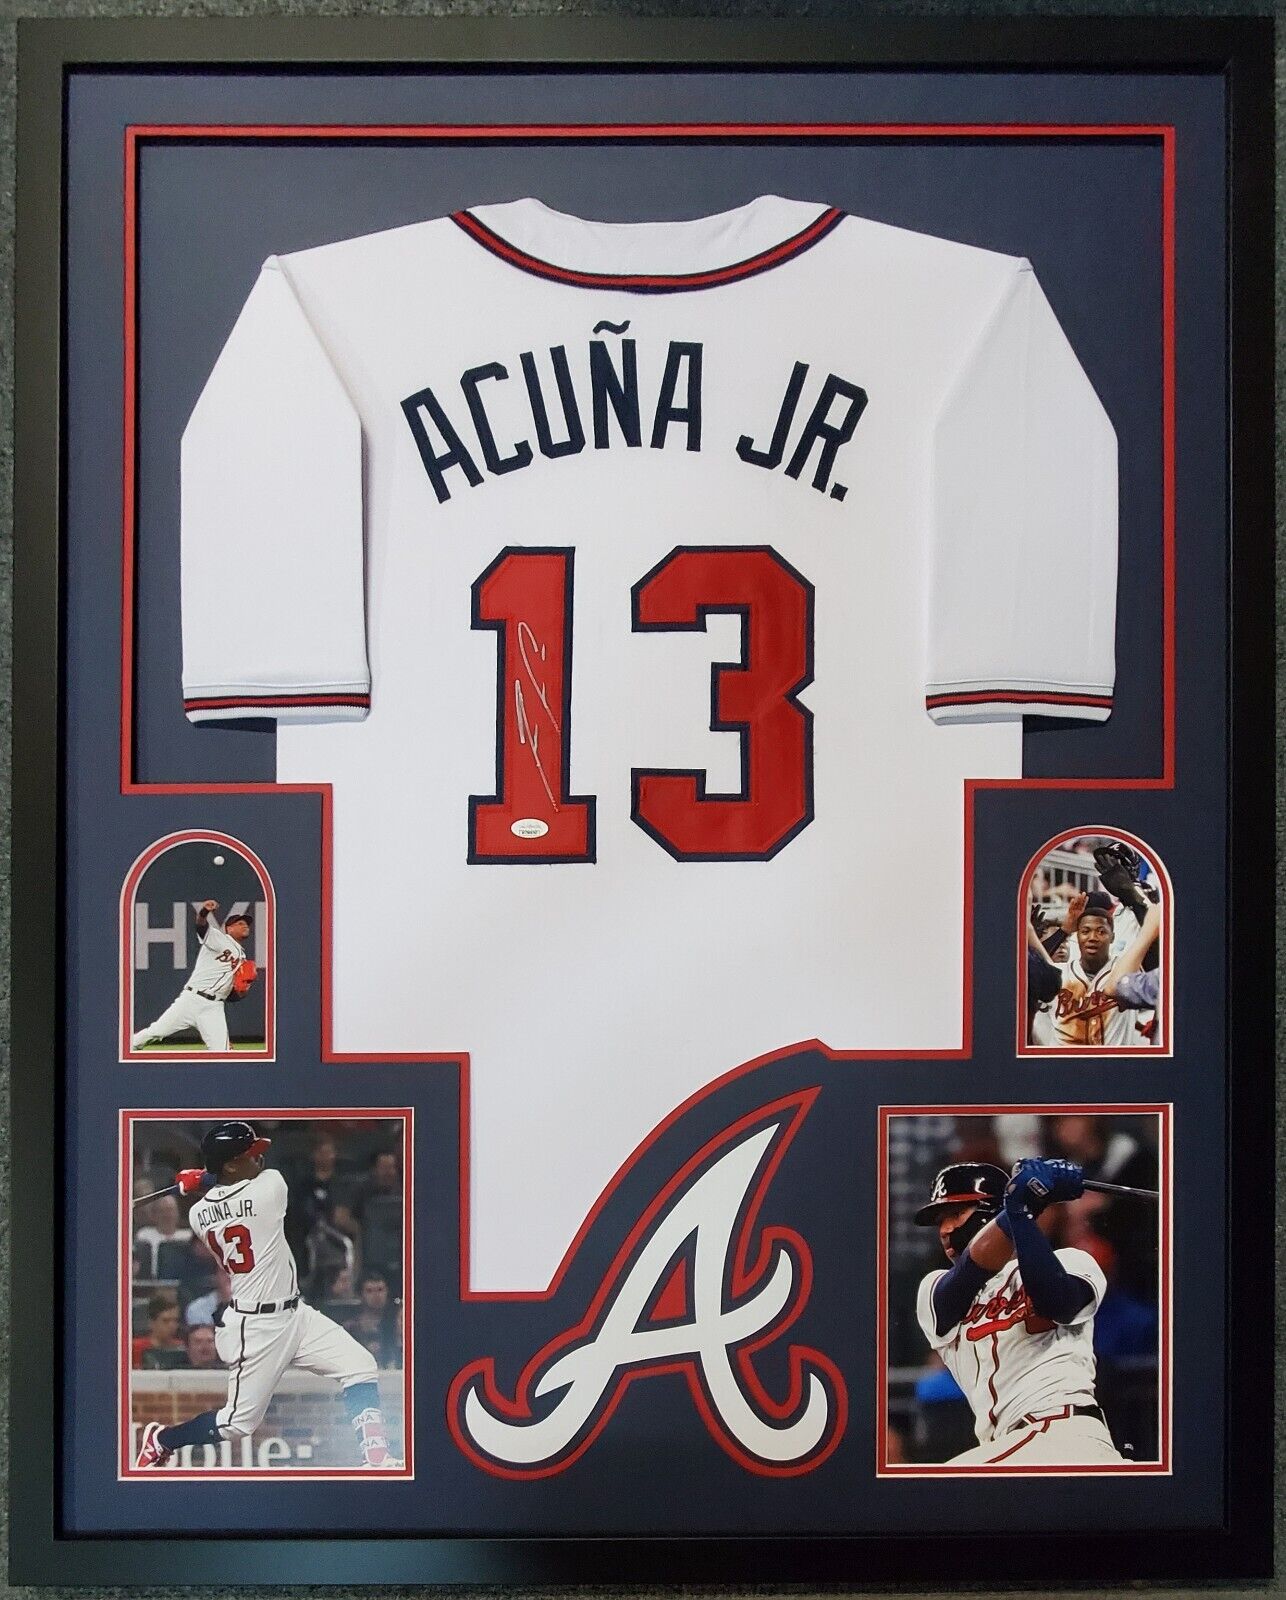 Ronald Acuna Jr Autographed Atlanta Braves Nike Cream Baseball Jersey - JSA  COA